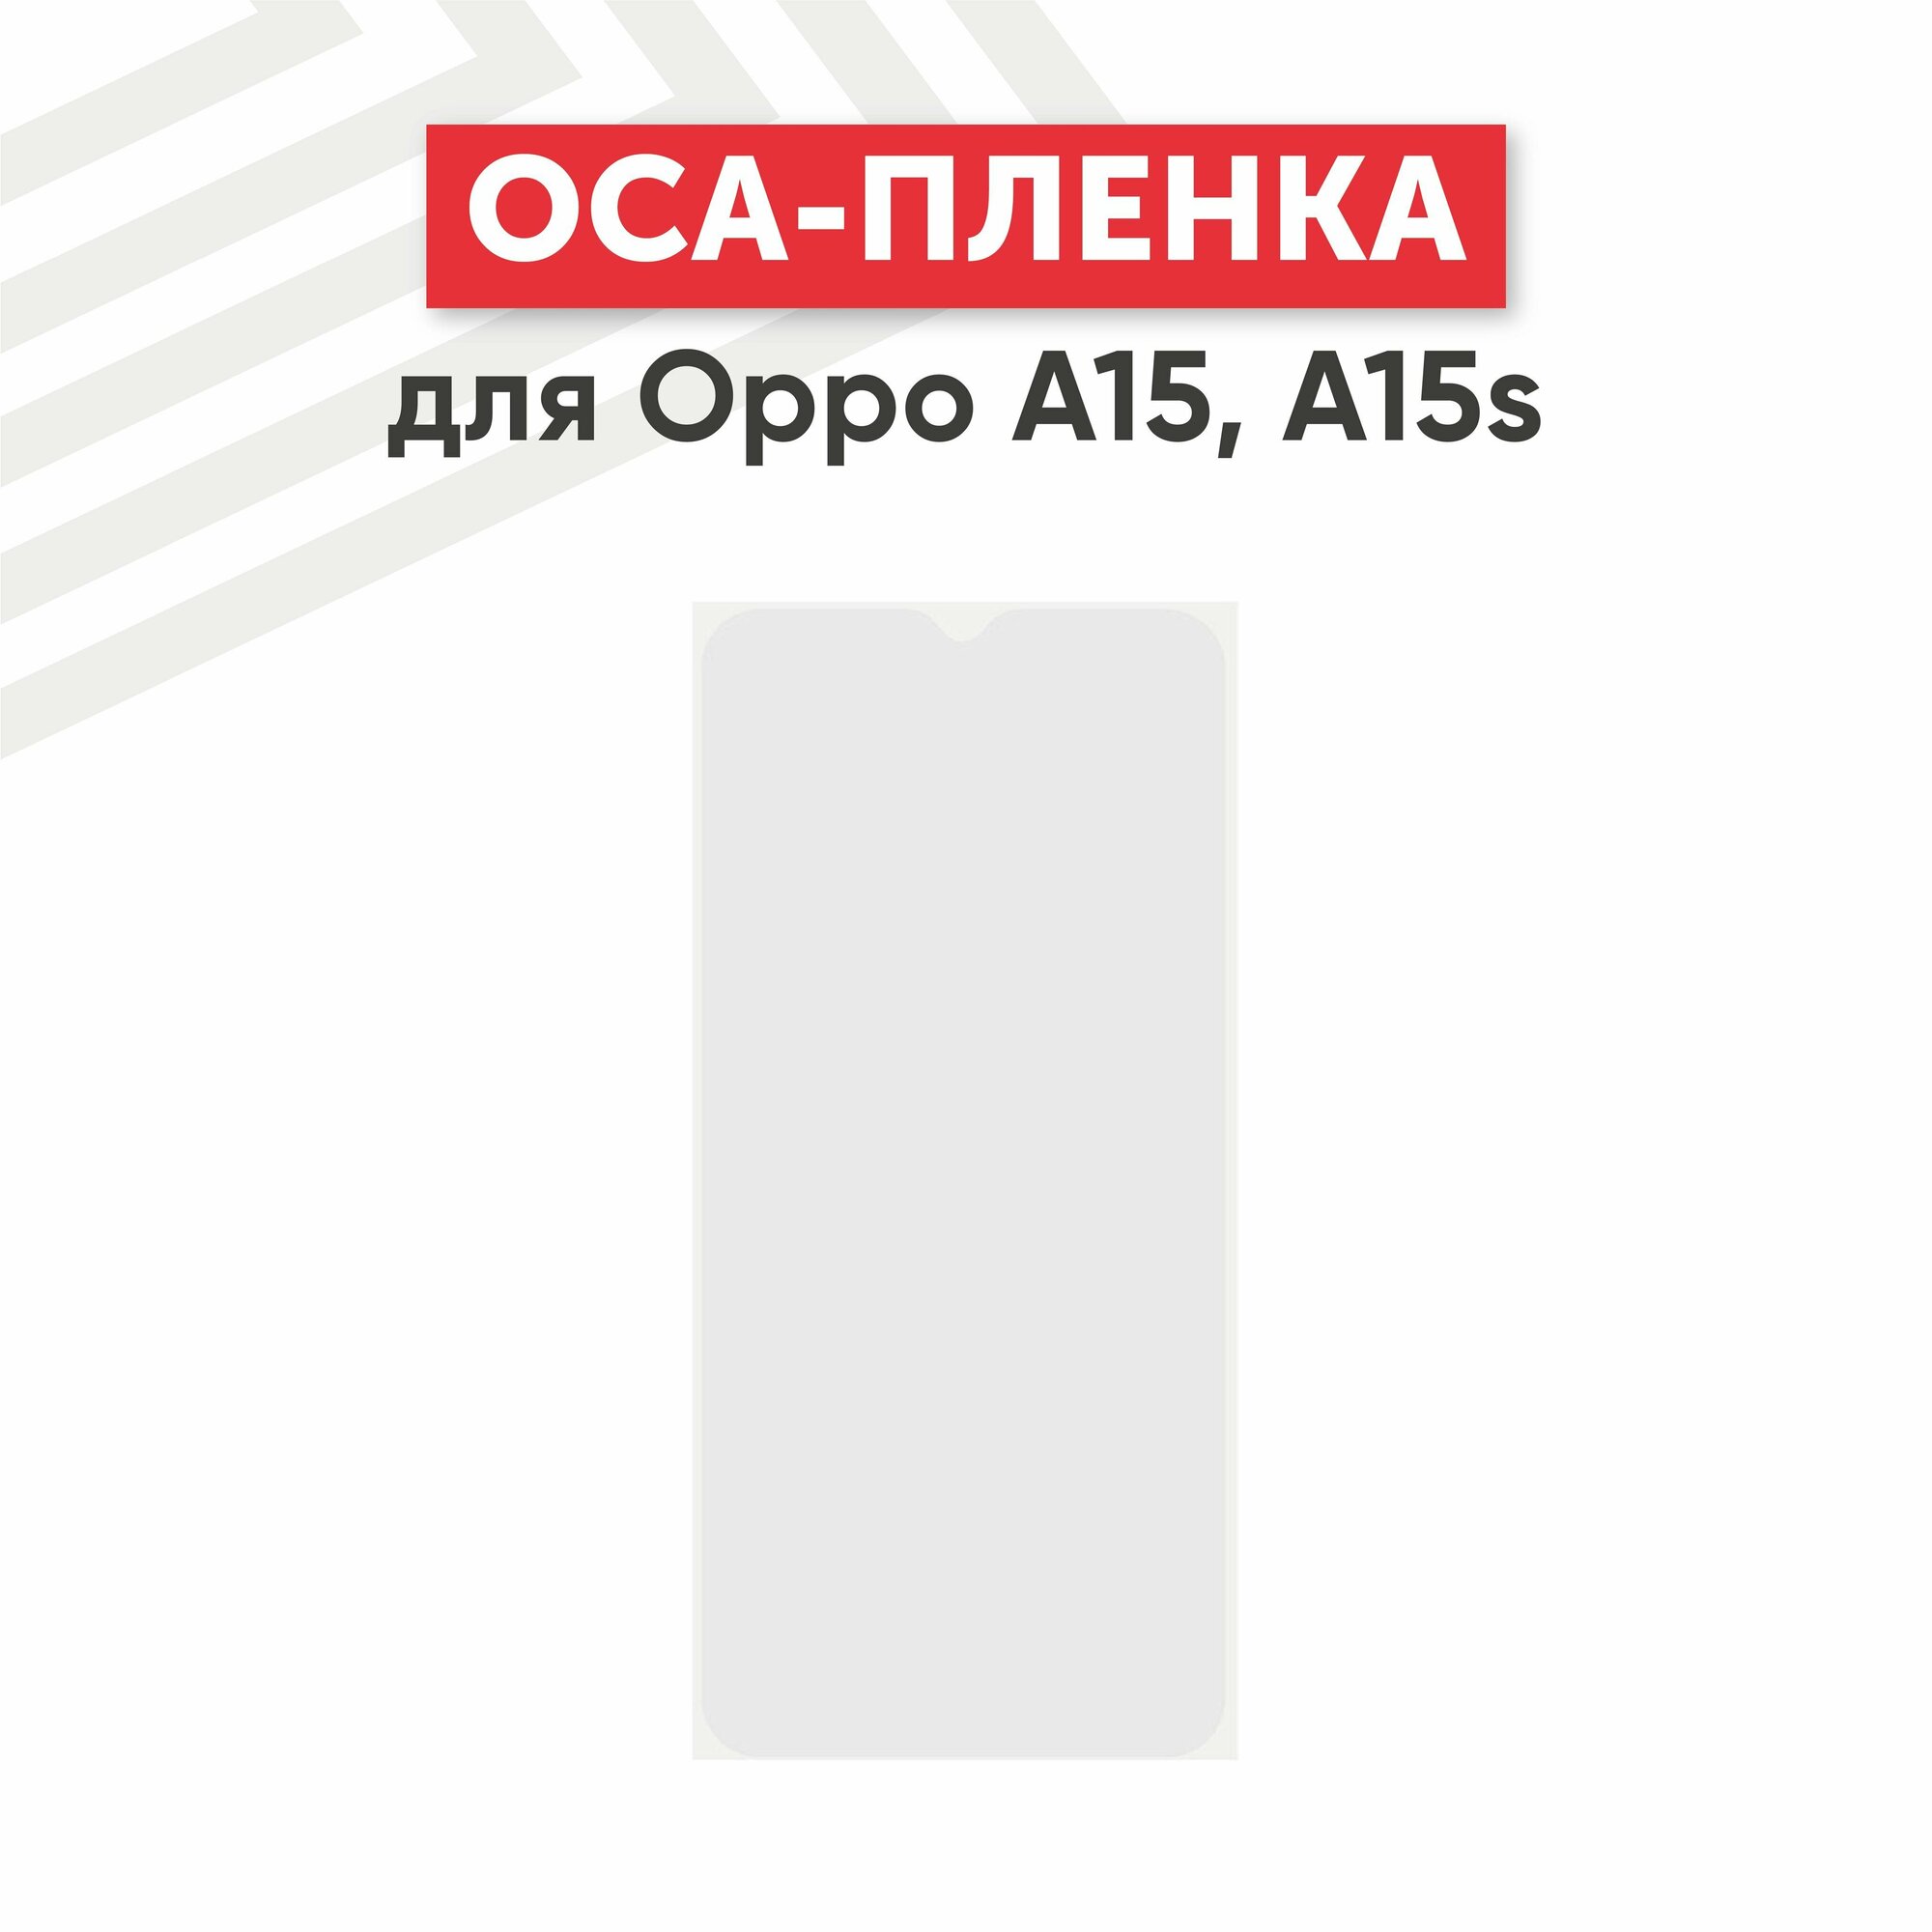 OCA пленка (клей) для мобильного телефона (смартфона) Oppo A15, A15s